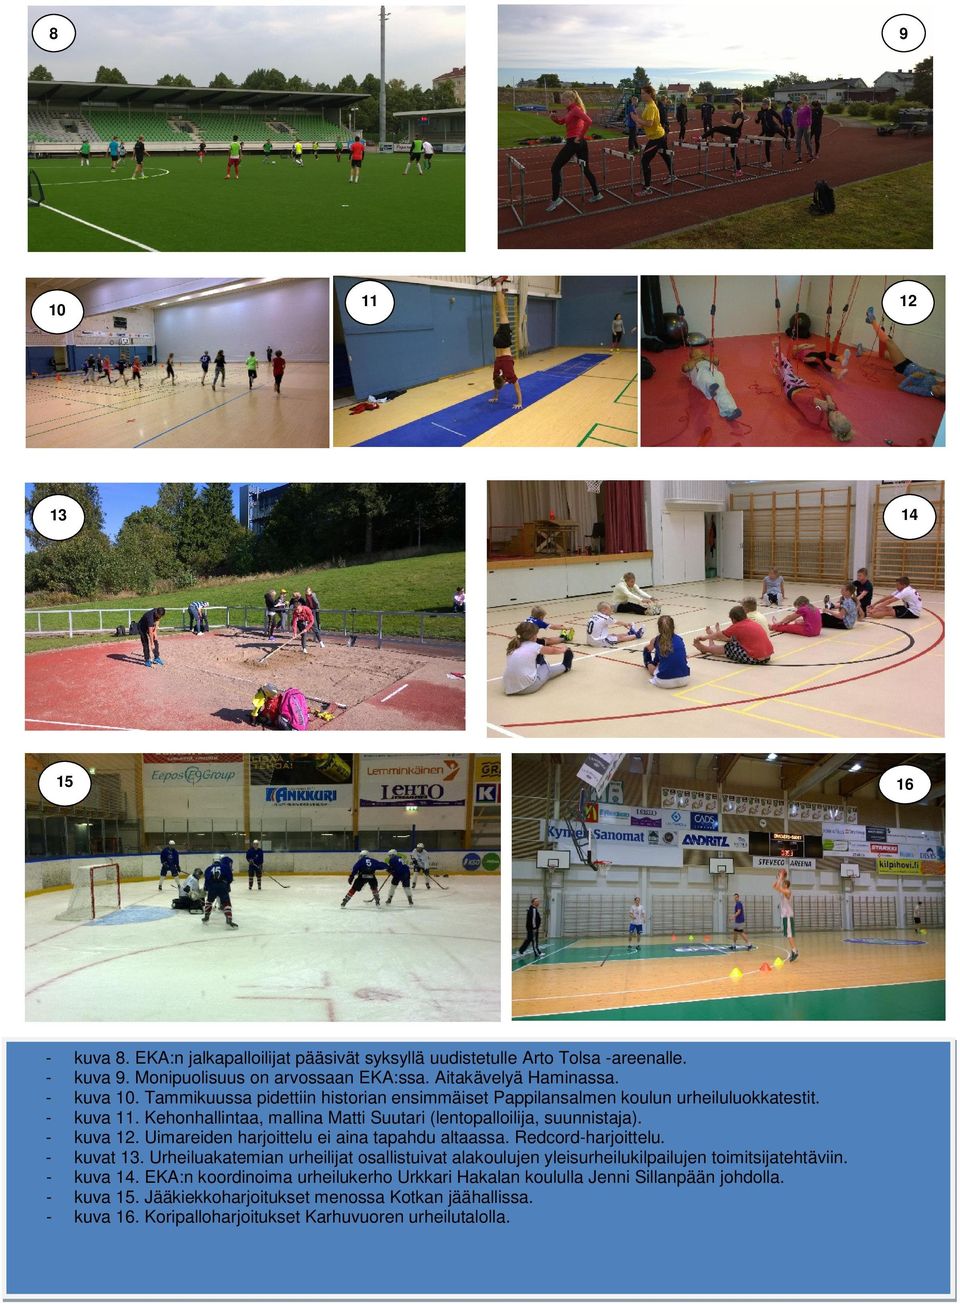 harjoittelu ei aina tapahdu altaassa Redcord-harjoittelu - kuvat 13 Urheiluakatemian urheilijat osallistuivat alakoulujen yleisurheilukilpailujen toimitsijatehtäviin - kuva 14 EKA:n